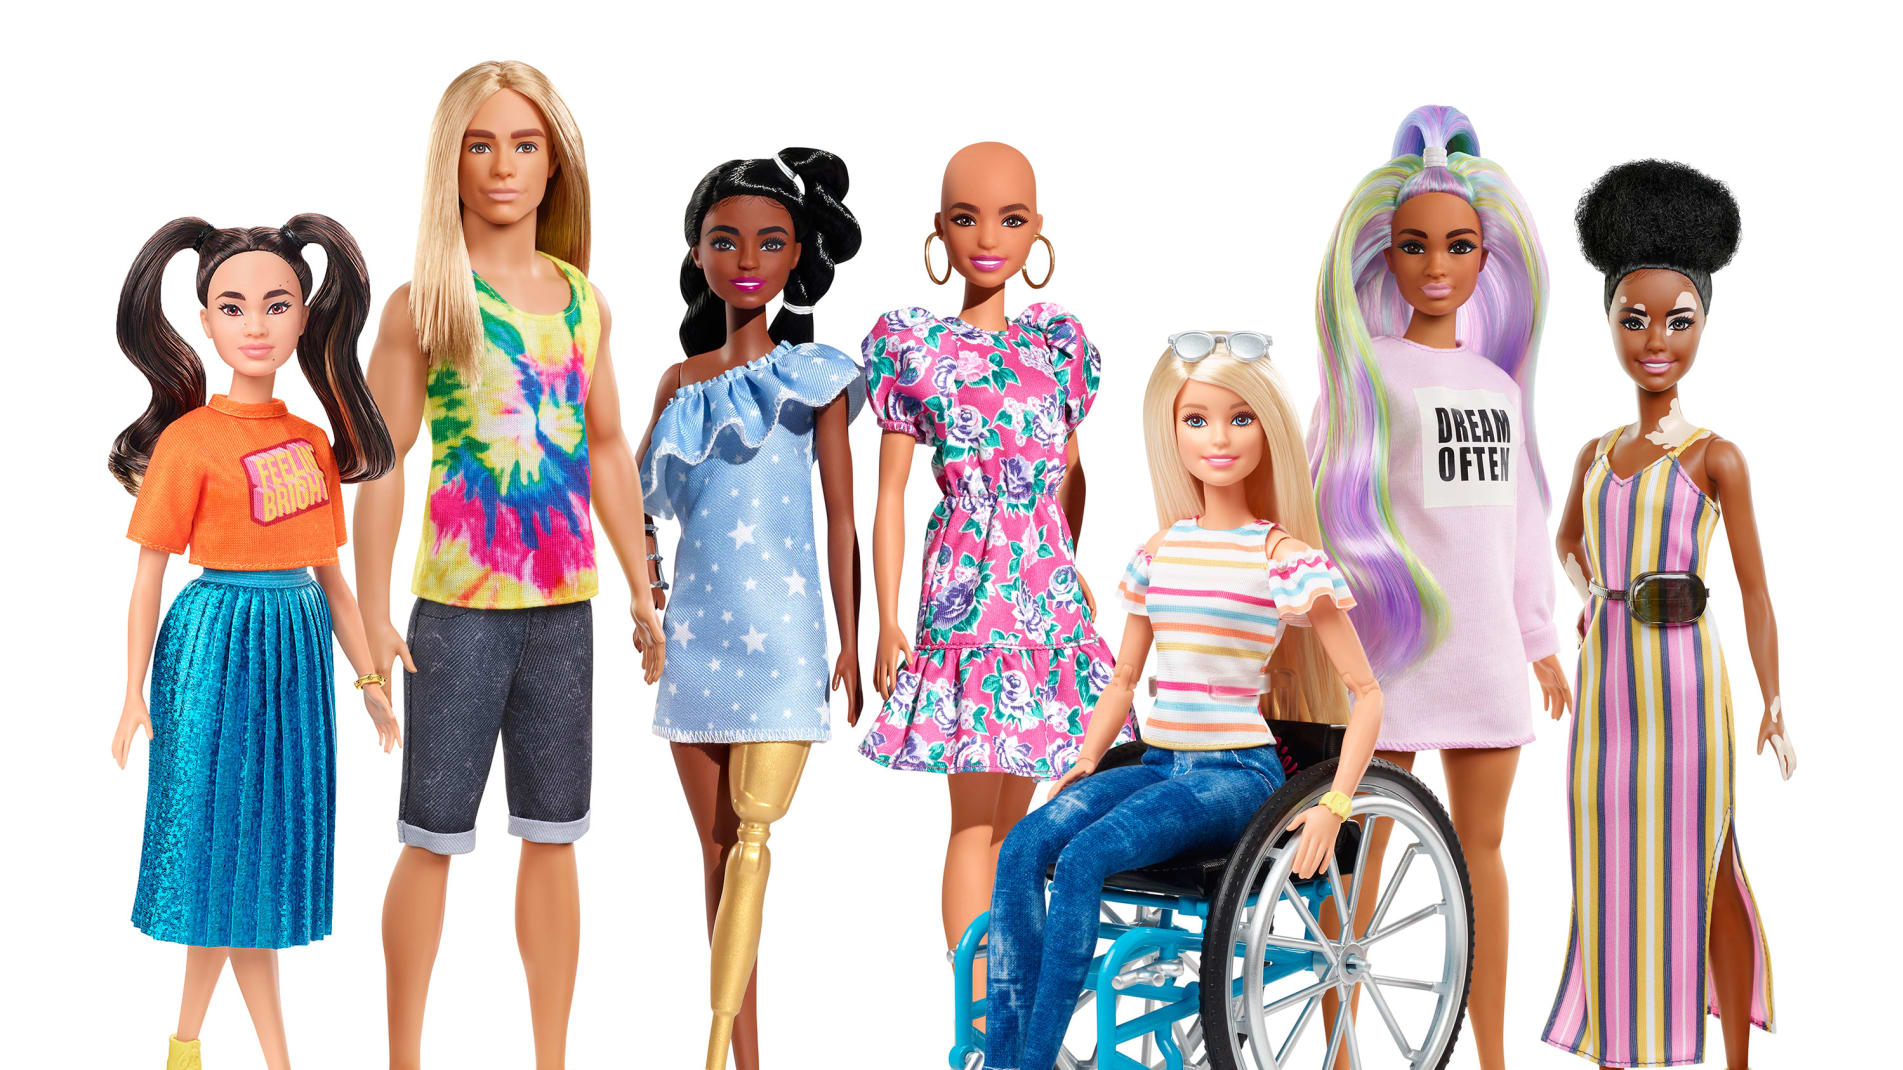 Coisas que Gosto: pinterest  Ideias fashion, Estilo barbie, Barbie  fashionista